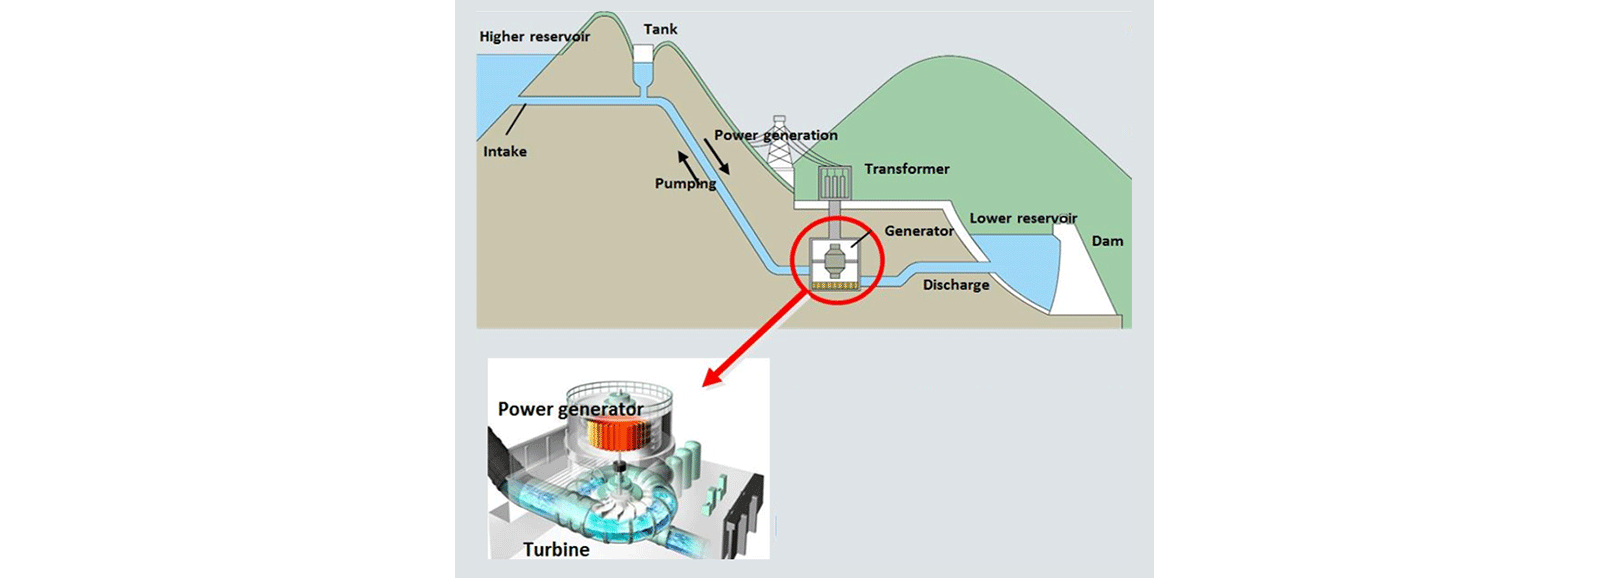 Hidroelektrik santrali: pompalama yoluyla enerji üretmek